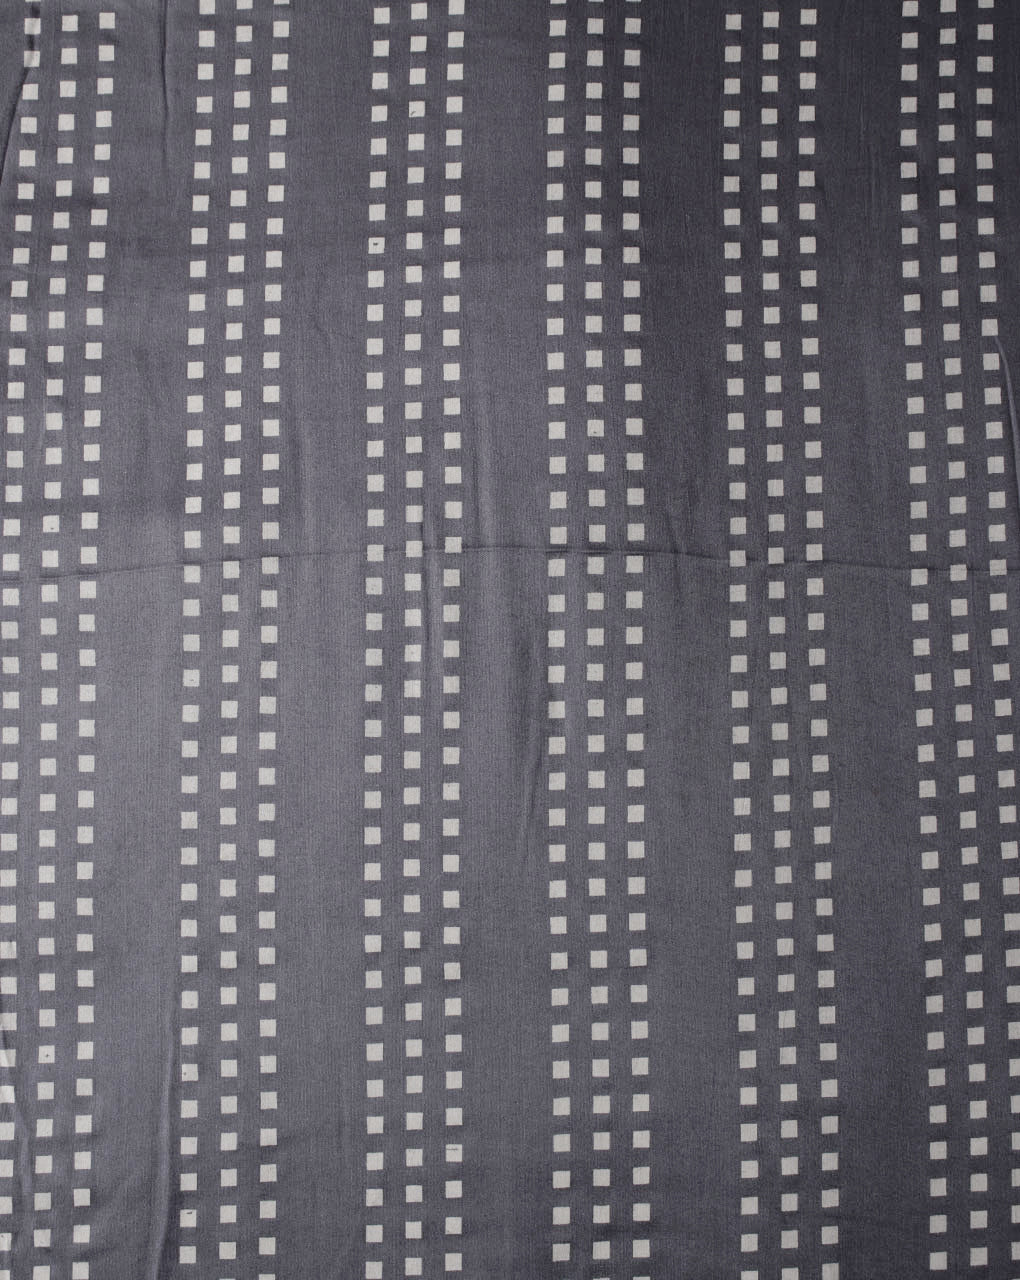 Khari Screen Print Rayon Modal Fabric - Fabriclore.com